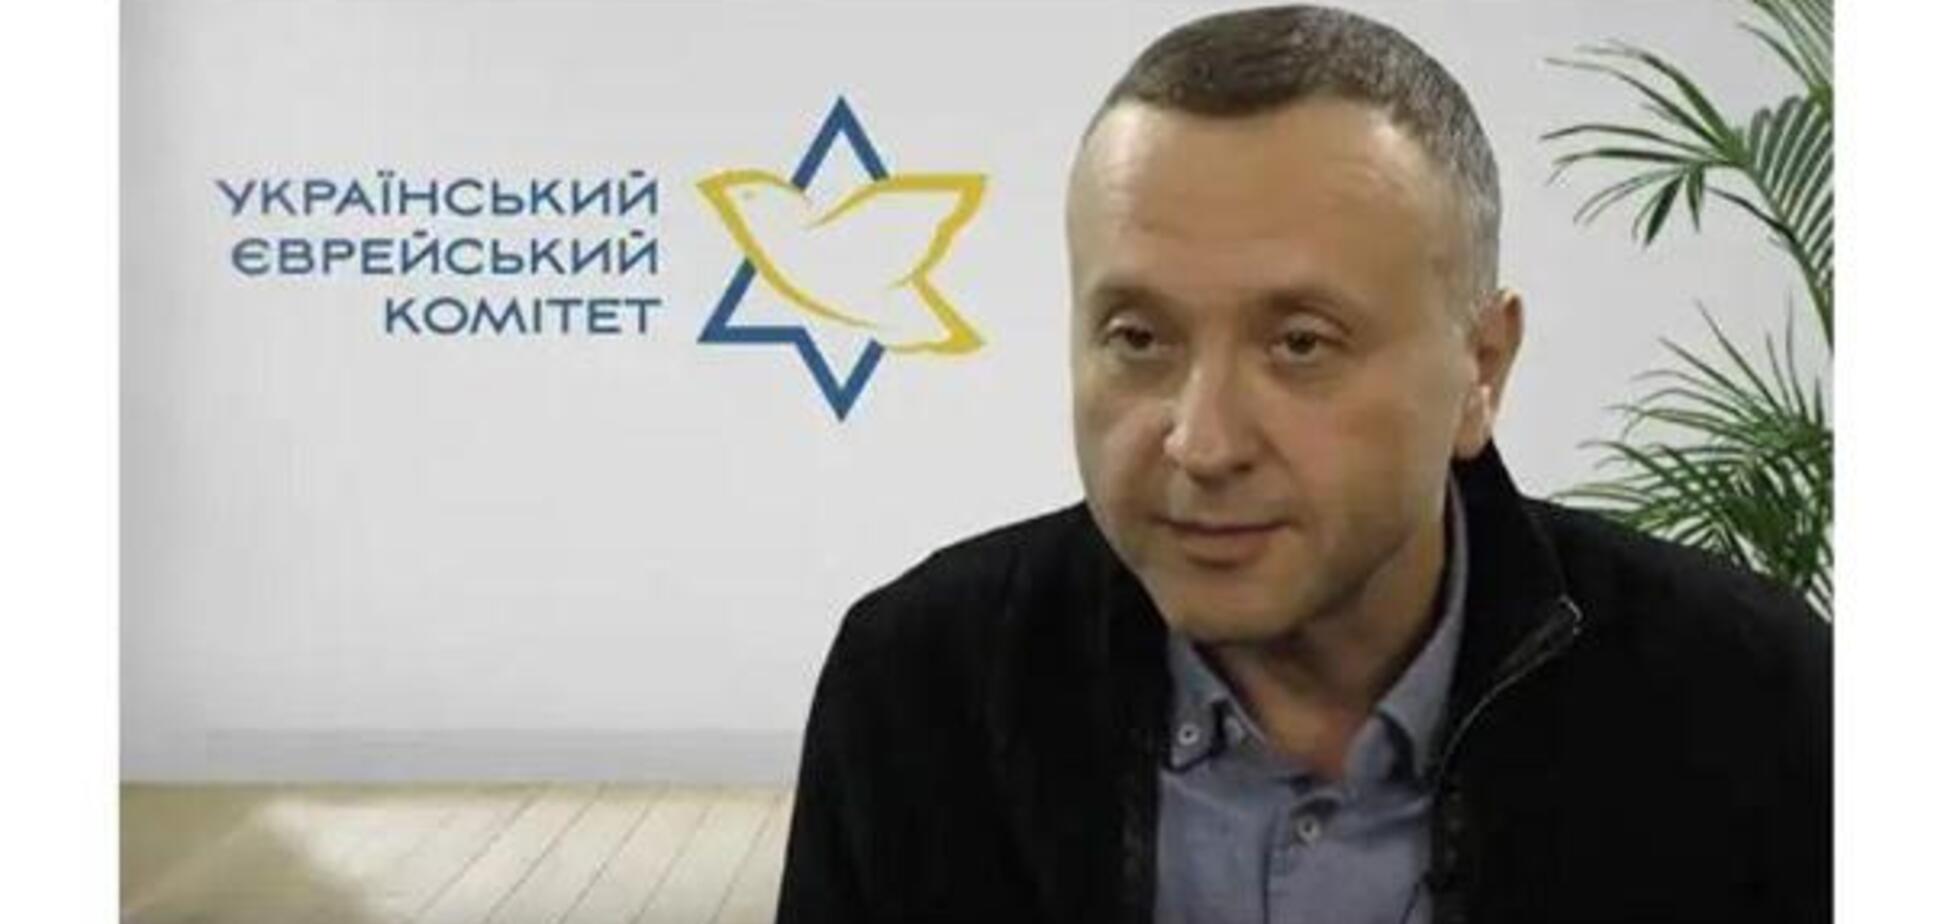 Известный борец с антисемитизмом-ксенофобией в Украине нашелся в ... Москве